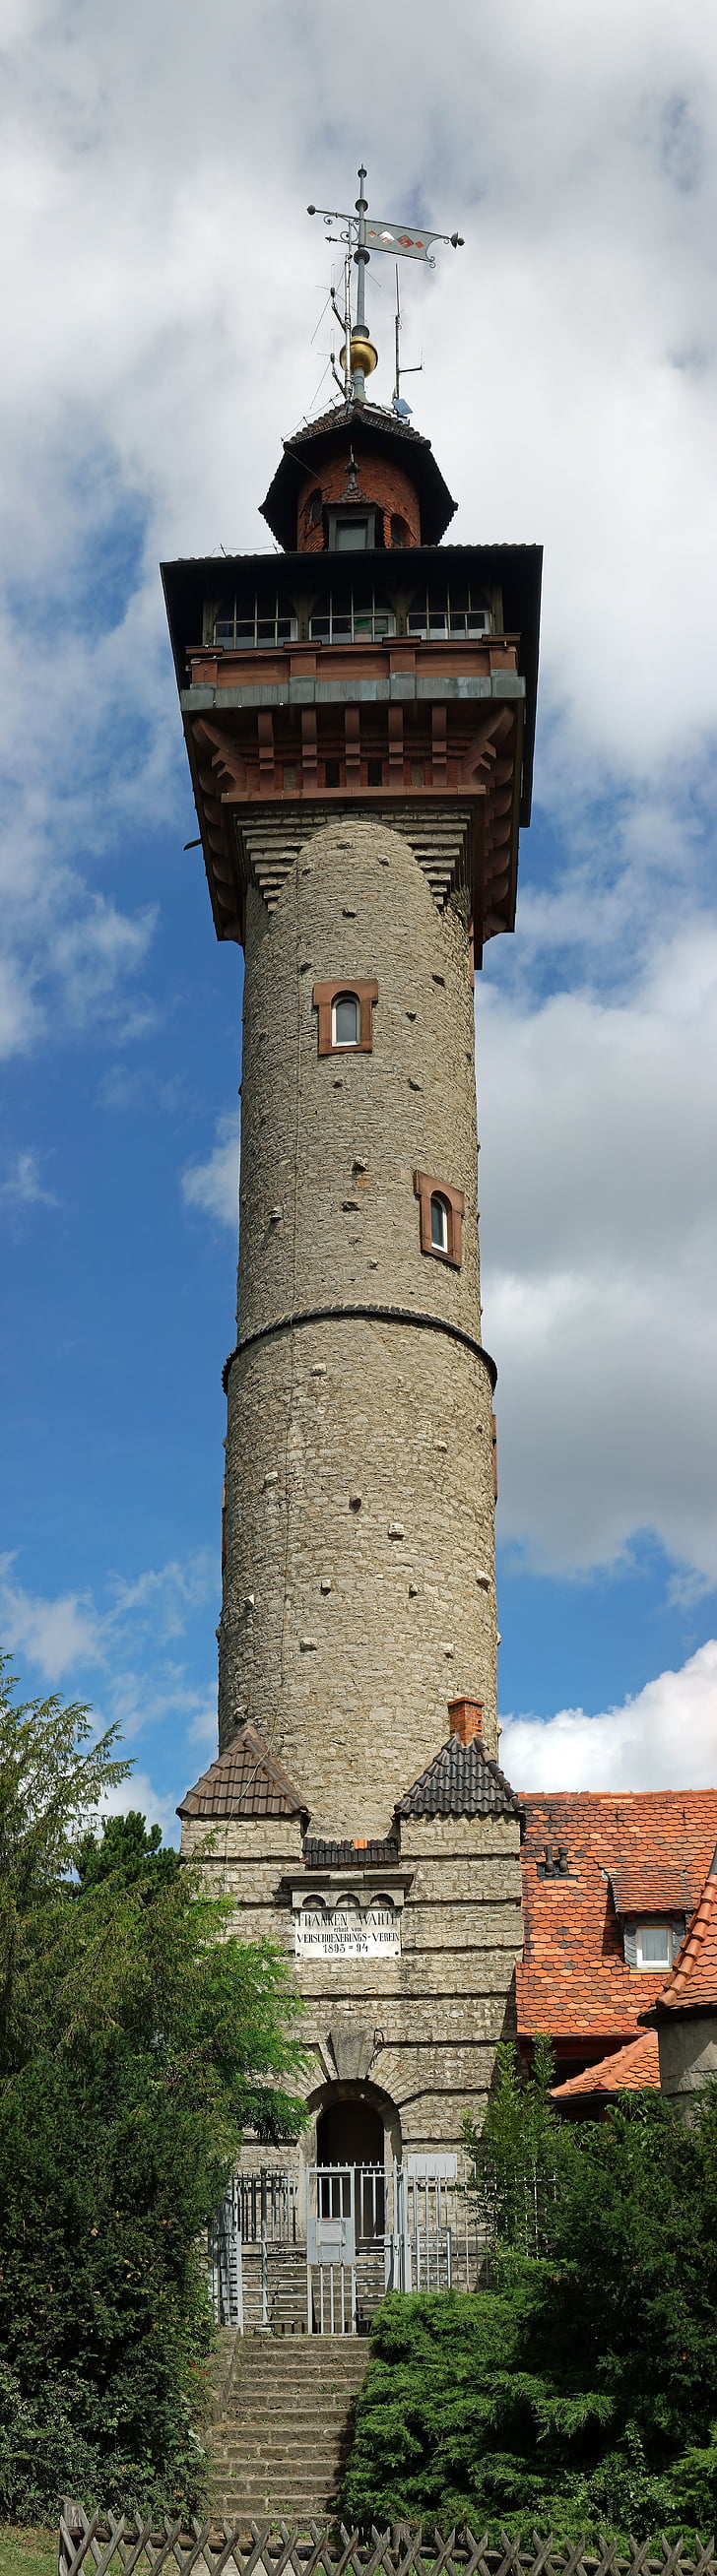 observation tower, frankenwarte, Lookout, Tower, historiske, bygning, struktur